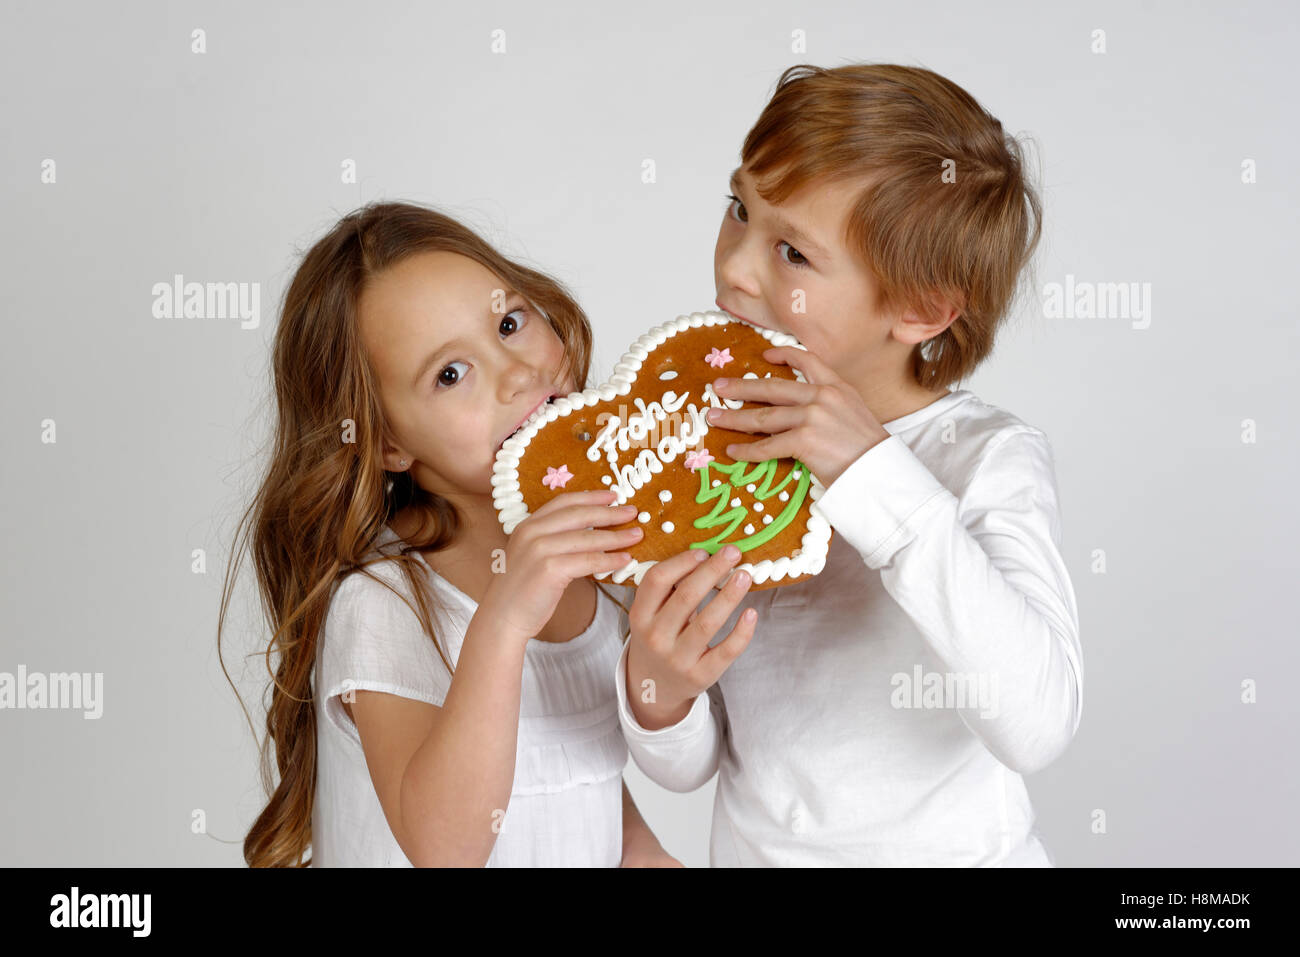 Kinder essen ein Lebkuchen Herz, Frohe Weihnachten, Weihnachtszeit, Deutschland Stockfoto